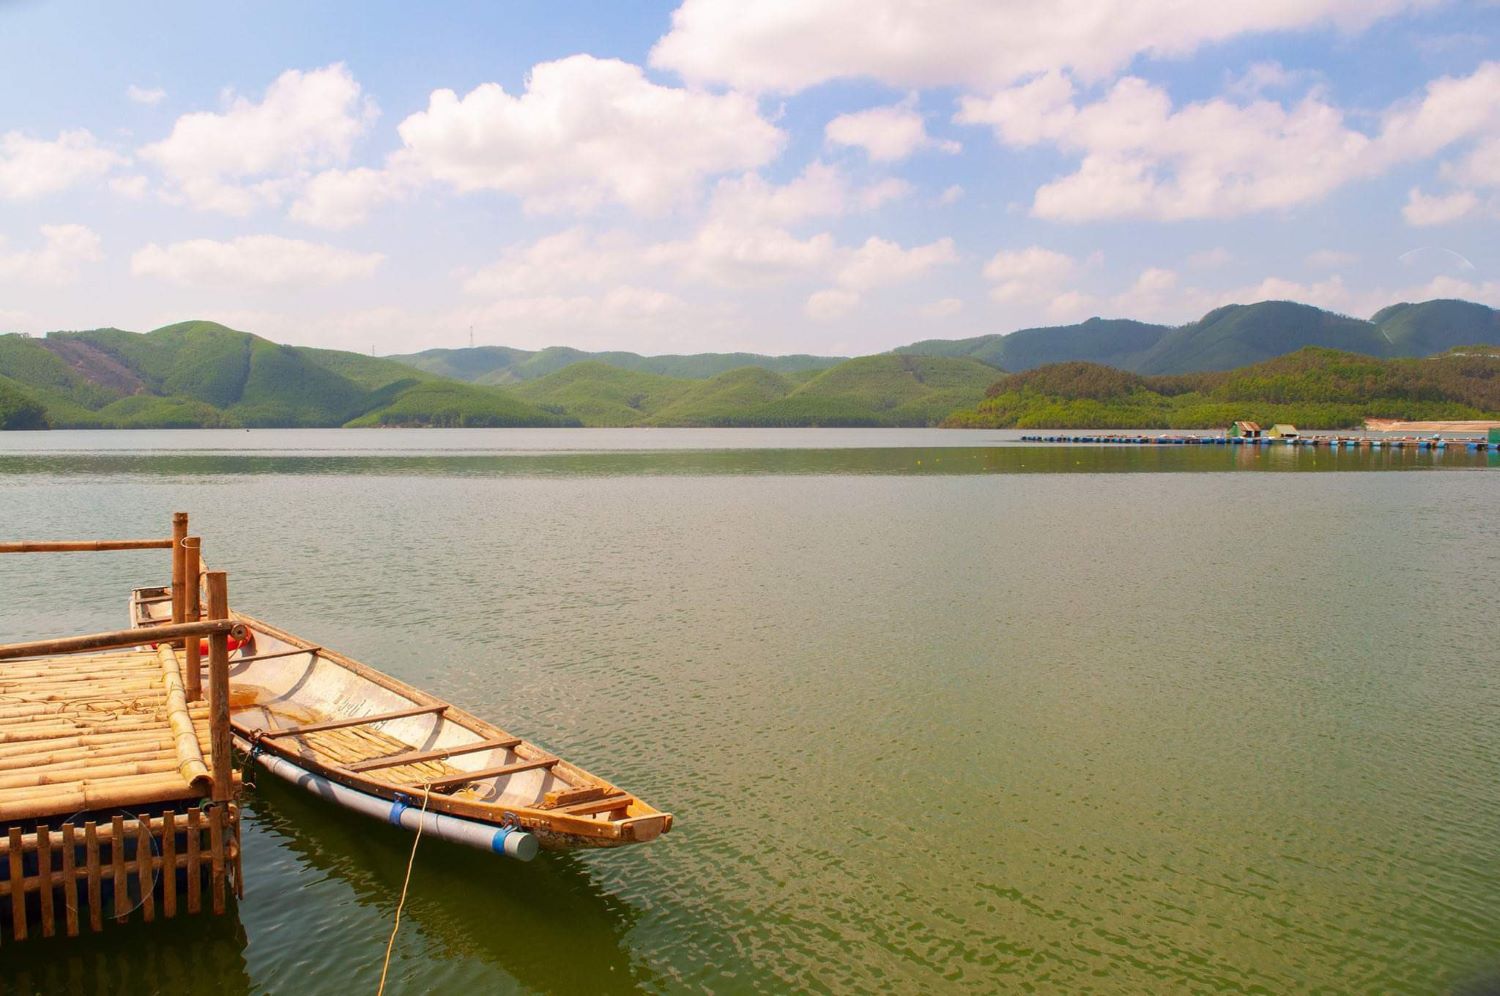 Khám phá cơn sốt mang tên Hồ Khe Ngang khiến giới trẻ điên đảo 3